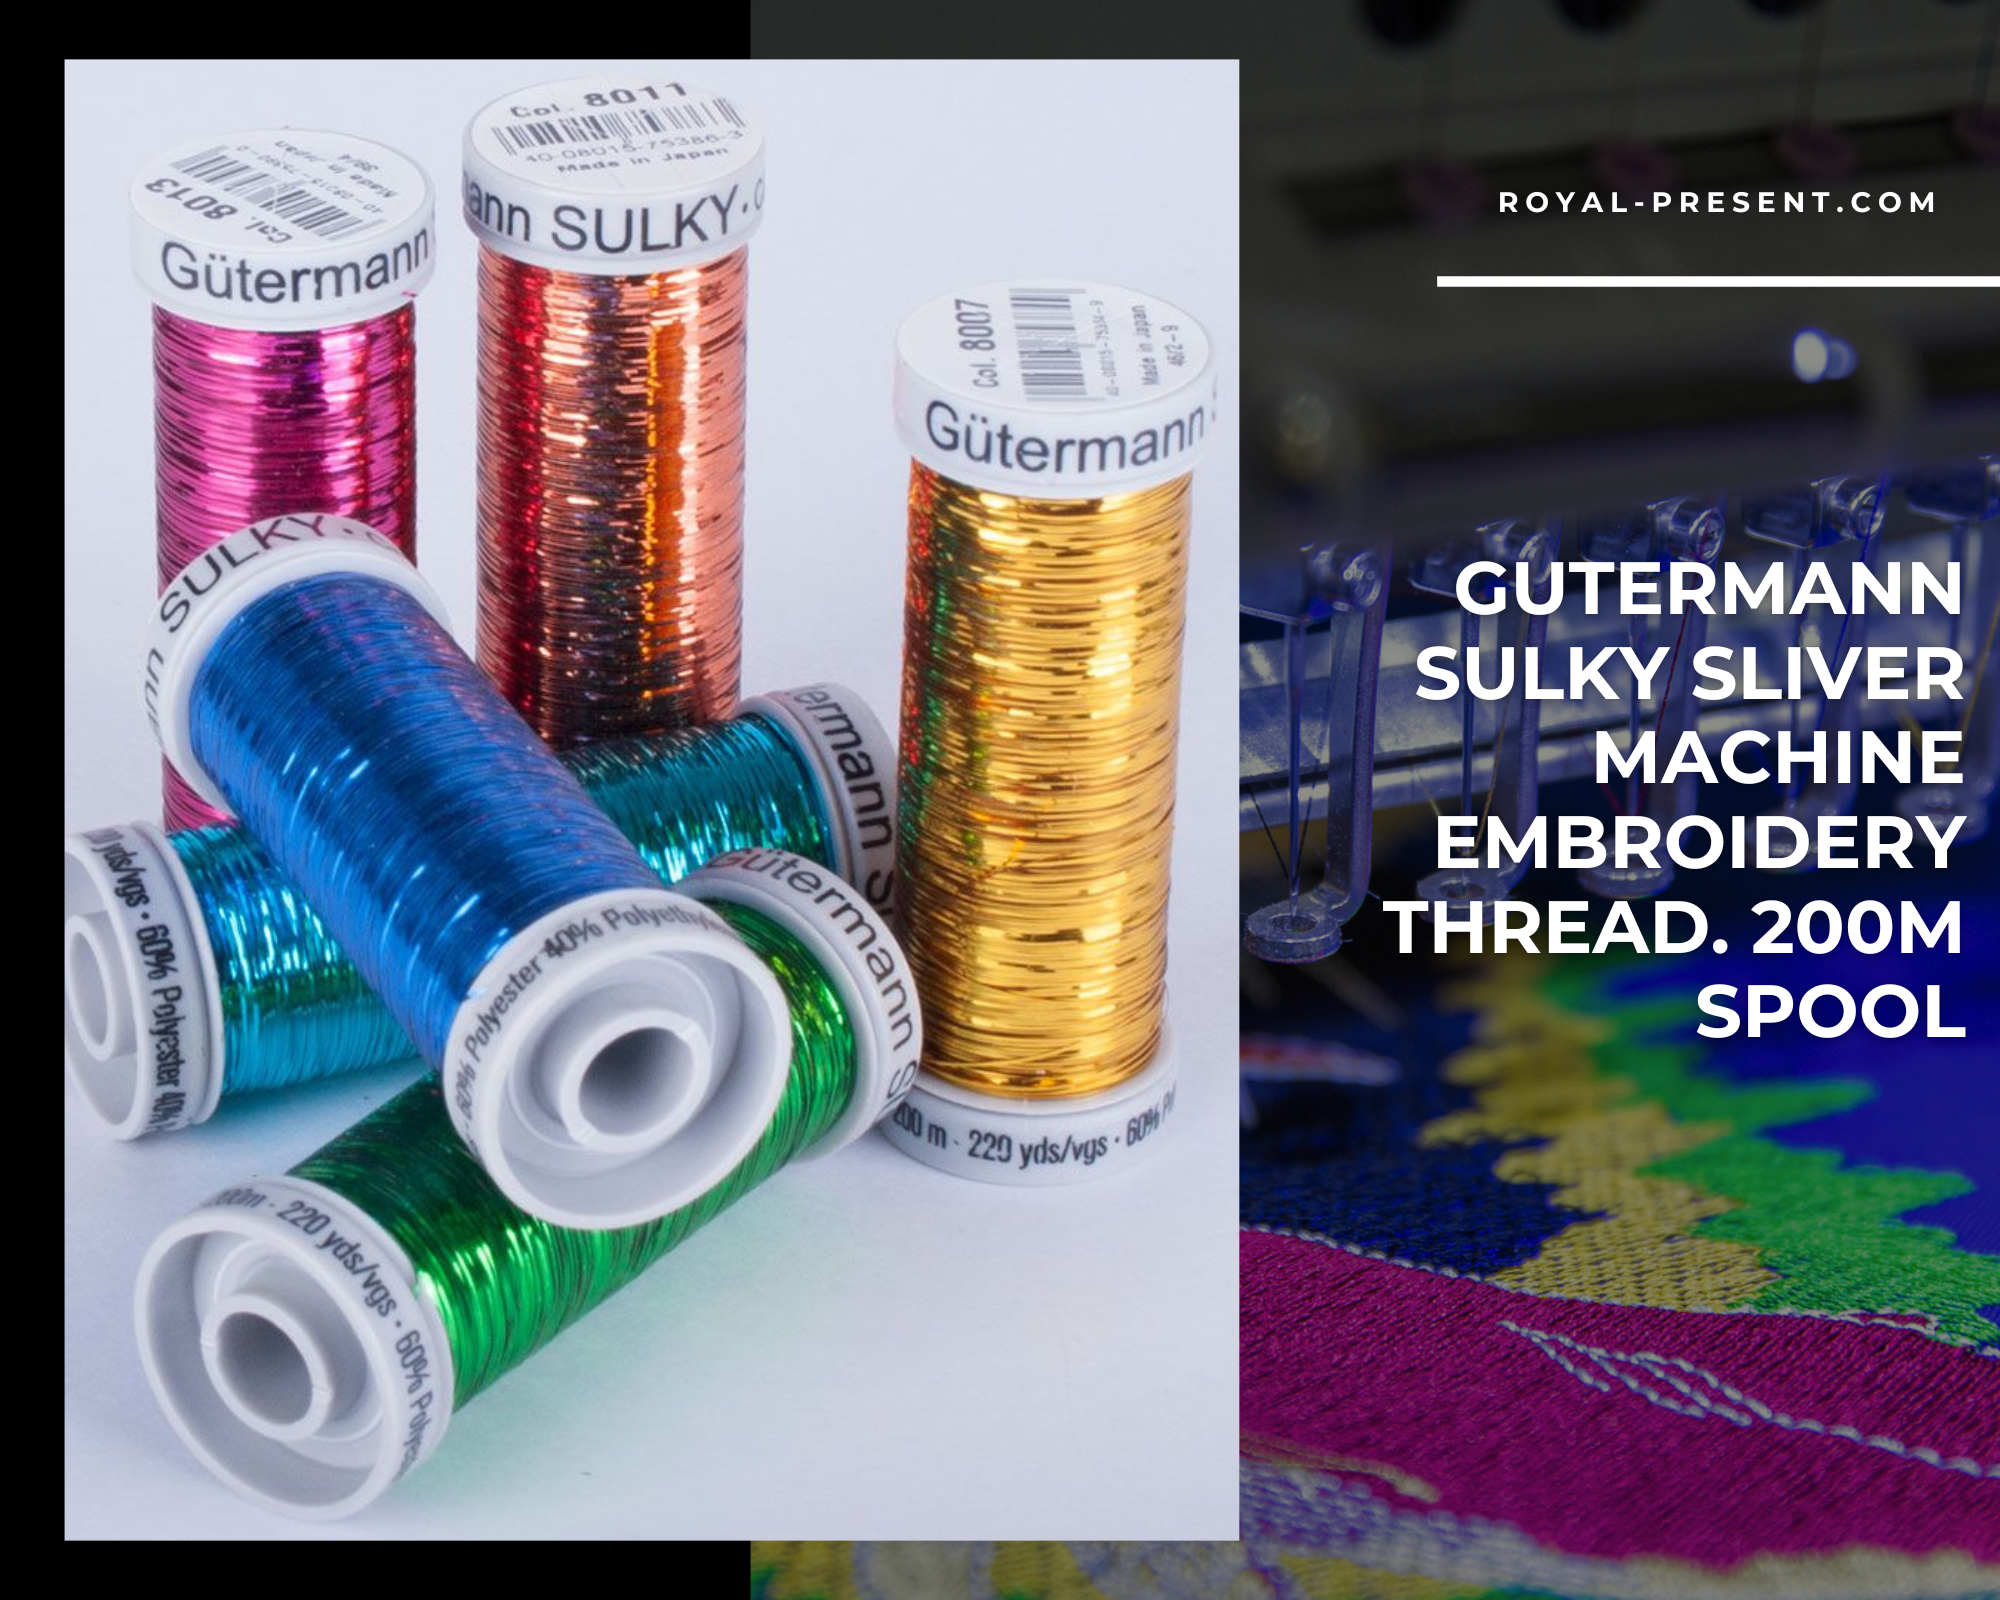 Gutermann Sulky Sliver Machine Embroidery Thread